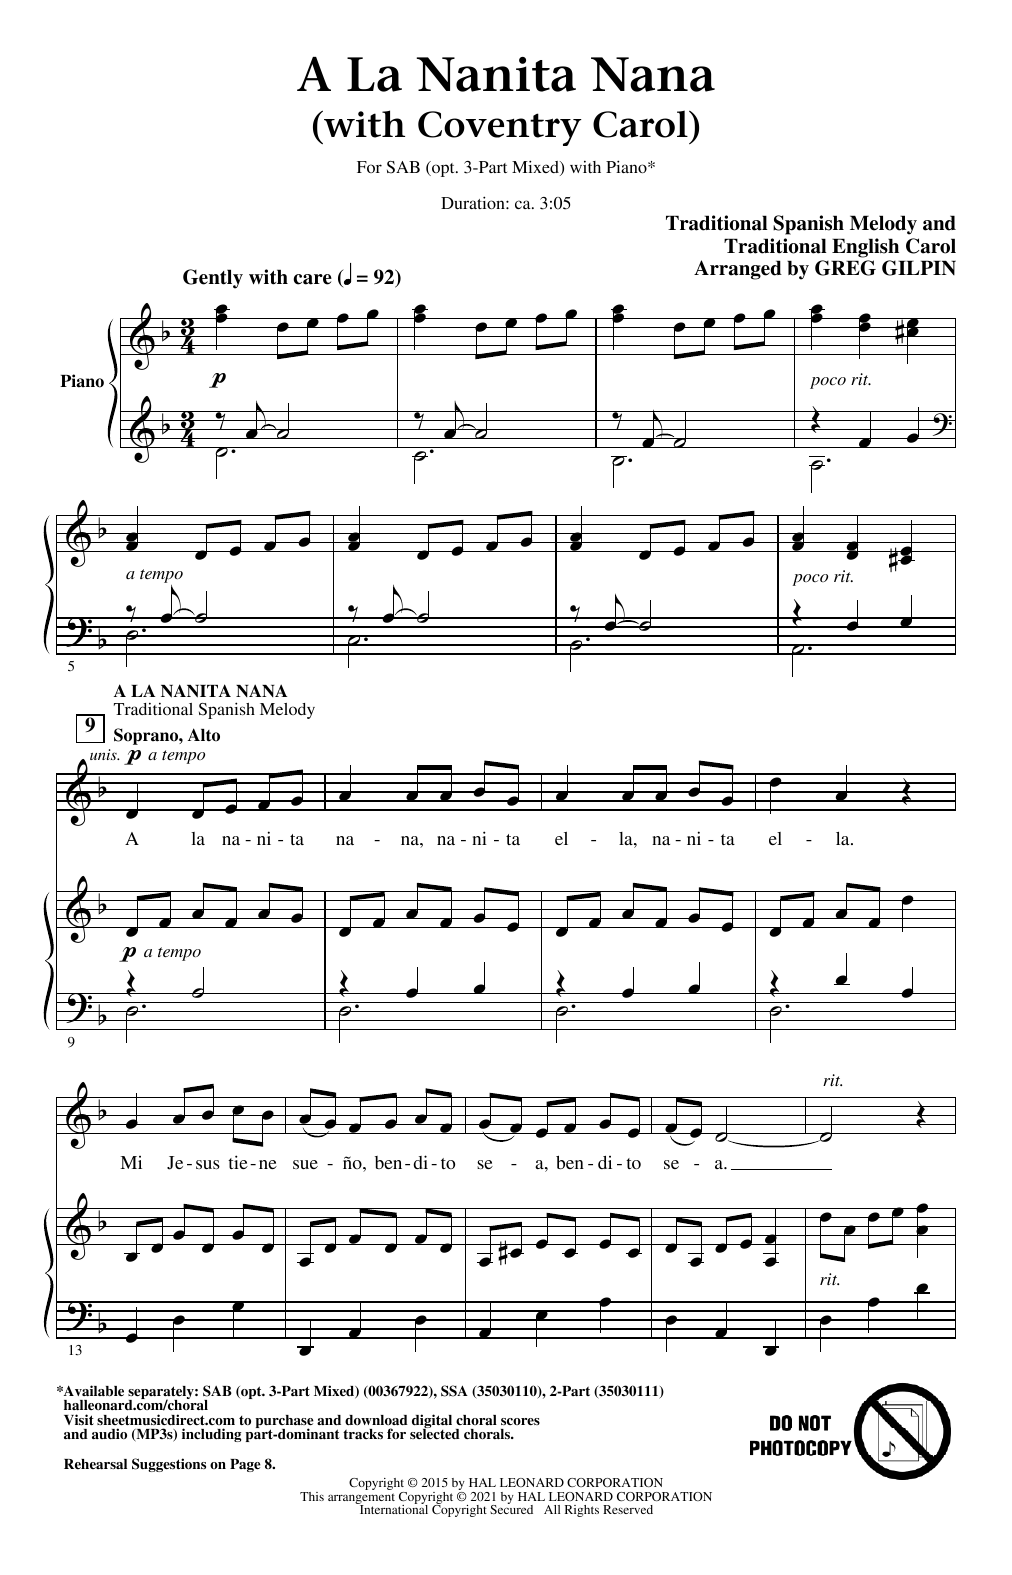 Greg Gilpin A La Nanita Nana (with Coventry Carol) Sheet Music Notes & Chords for SAB Choir - Download or Print PDF